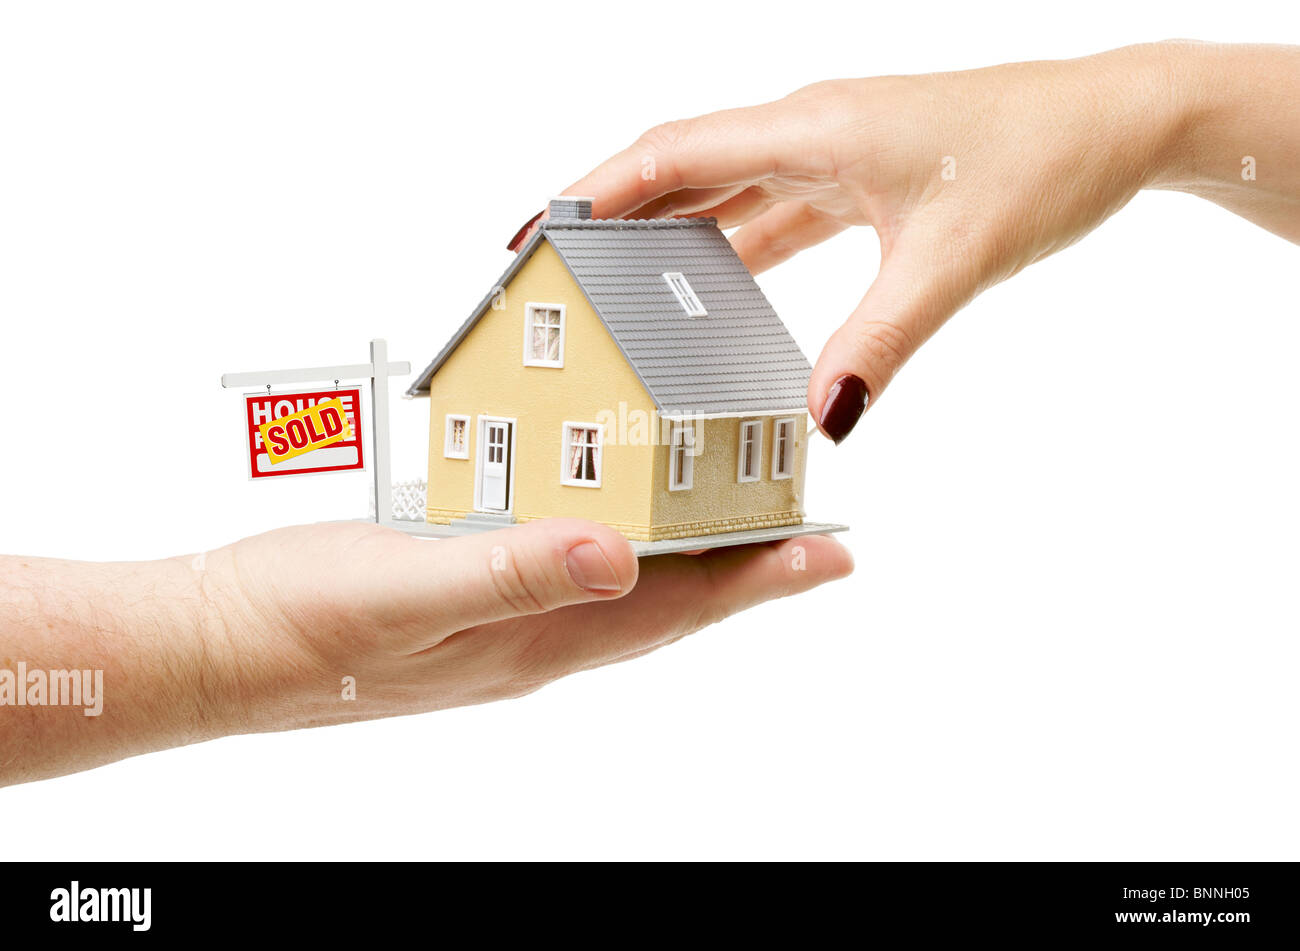 Für ein Haus mit verkauften Immobilien Zeichen isoliert auf einem weißen Hintergrund zu erreichen. Stockfoto